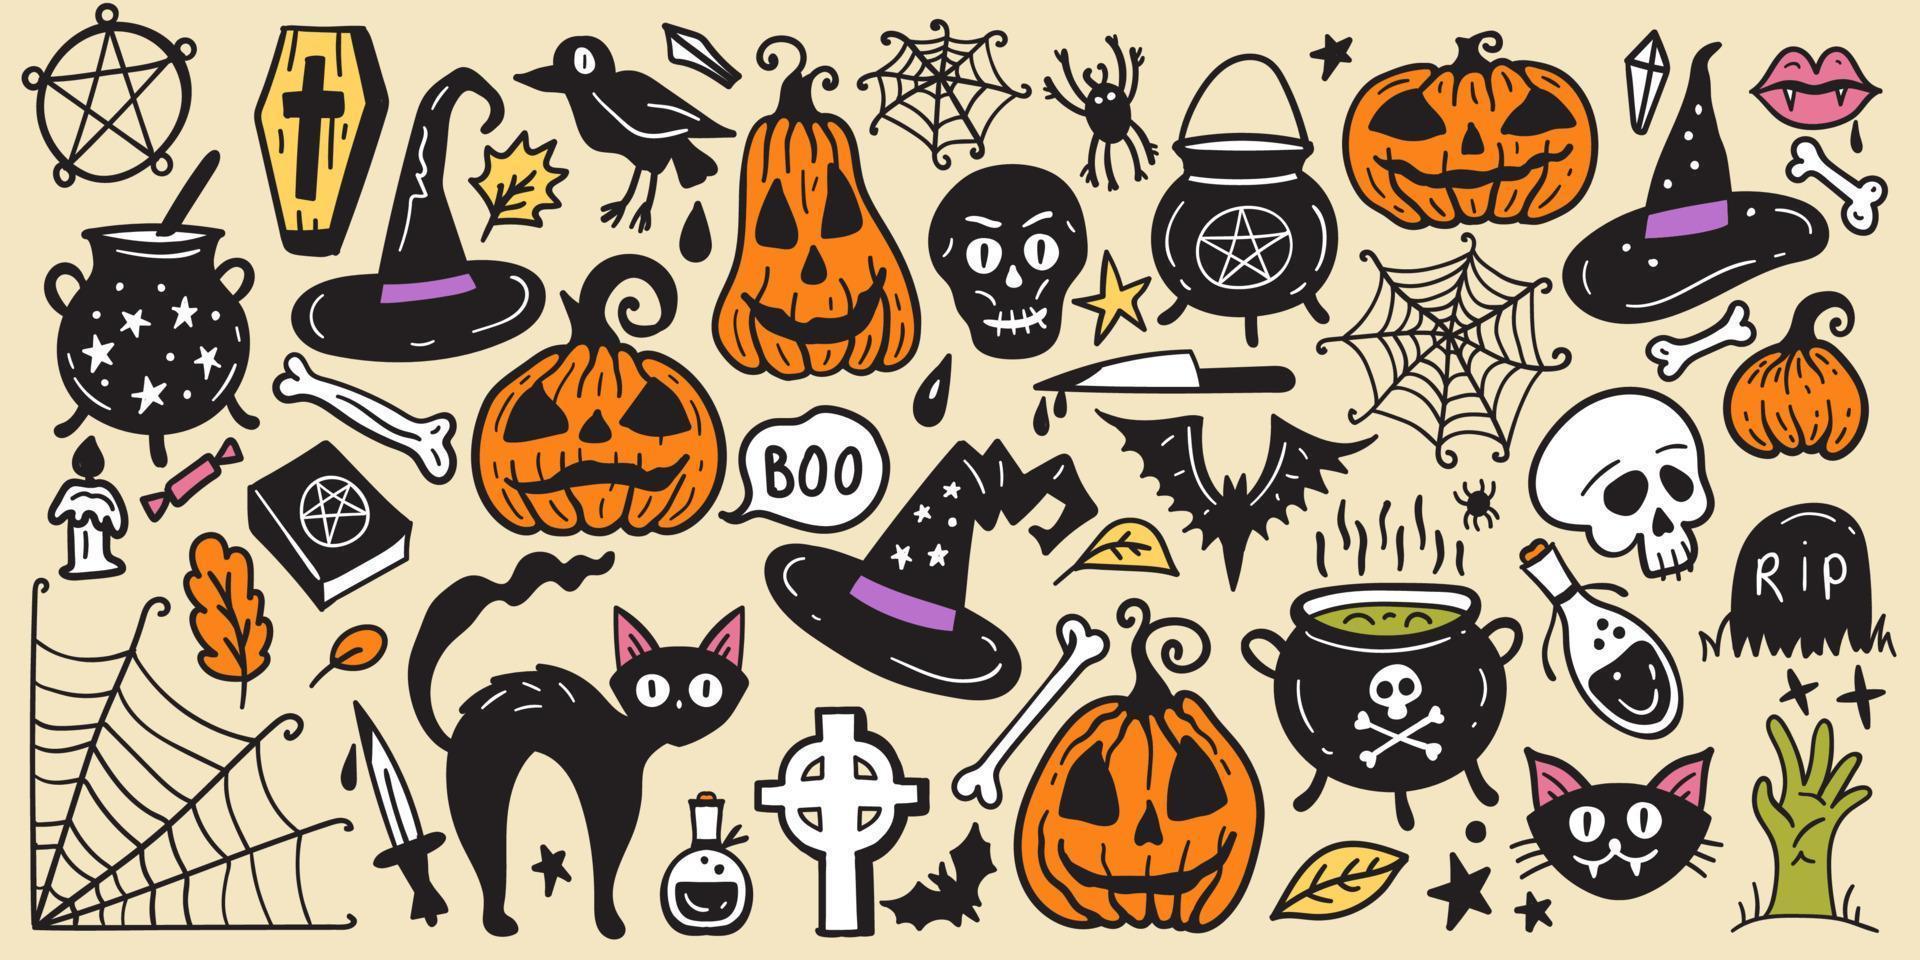 ljus samling av halloween klistermärke skiss uppsättning. stor uppsättning av hand dragen klotter. samling halloween och magi element. pumpor, spöke, skalle, svart katt, pott, hatt. vektor